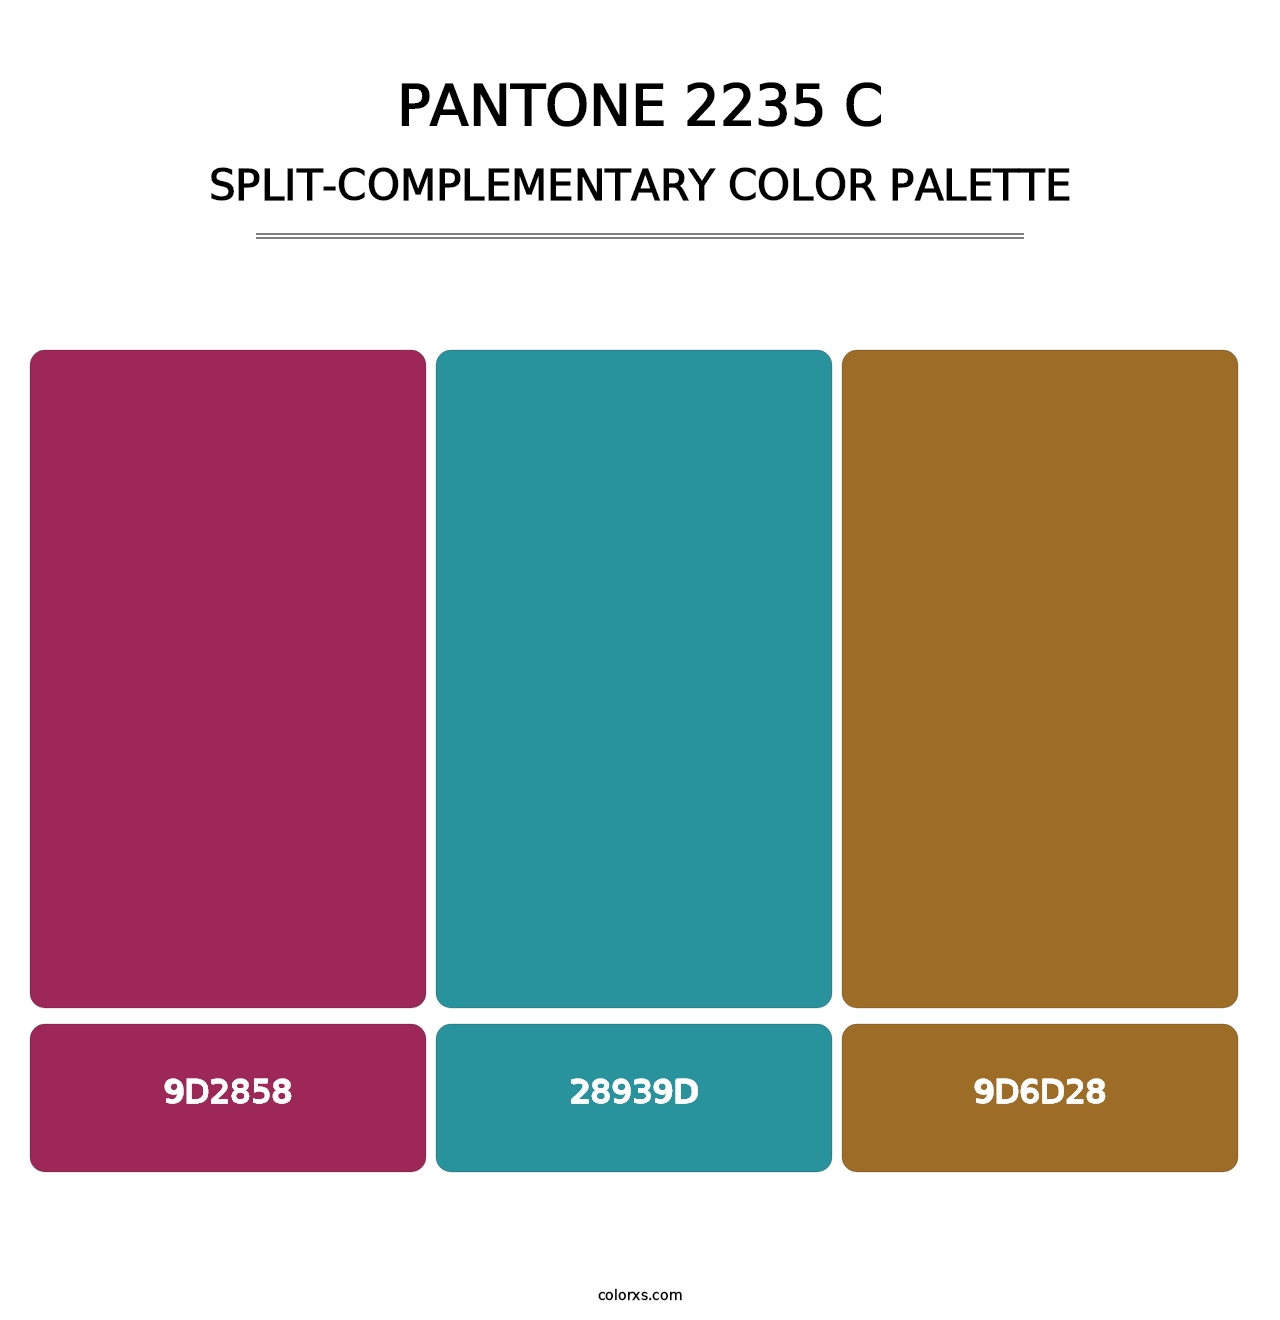 PANTONE 2235 C - Split-Complementary Color Palette